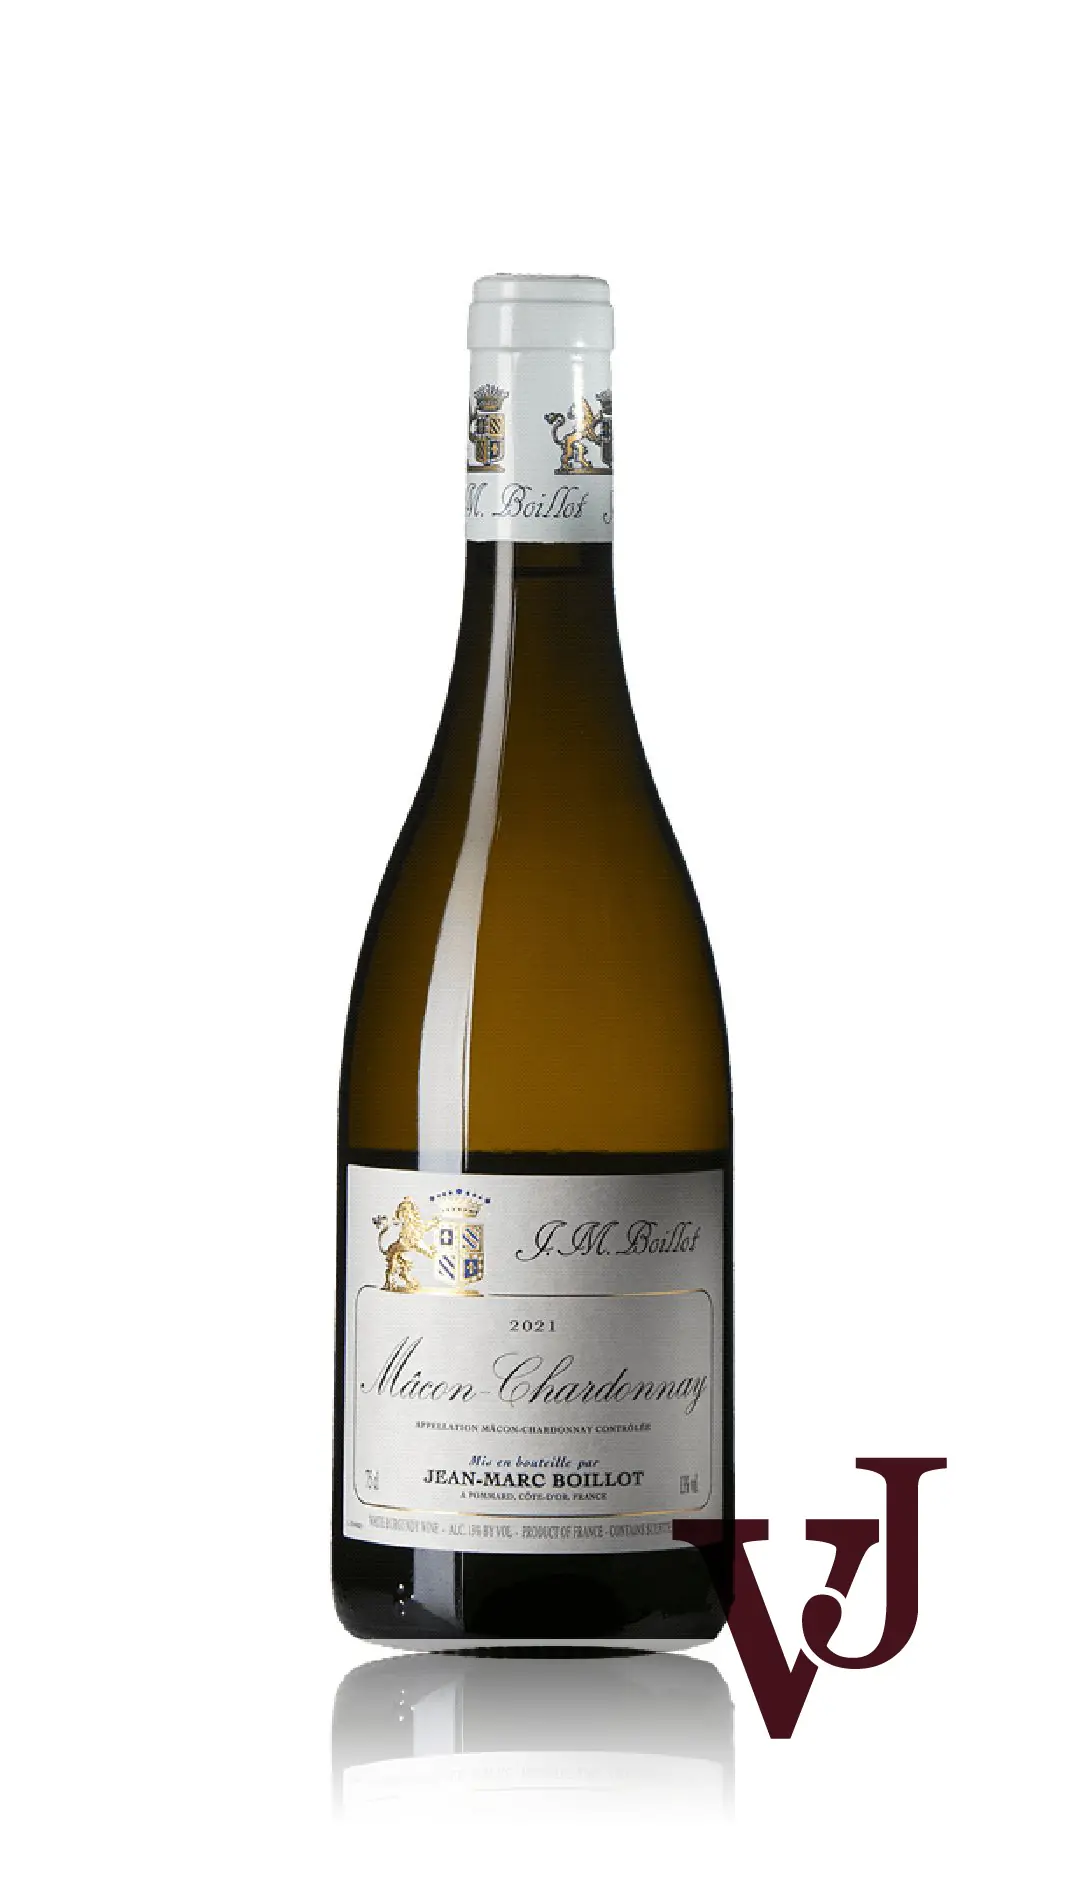 Vitt Vin - Jean-Marc Boillot Mâcon Chardonnay 2021 artikel nummer 9017601 från producenten Jean-Marc Boillot från området - Vinjournalen.se